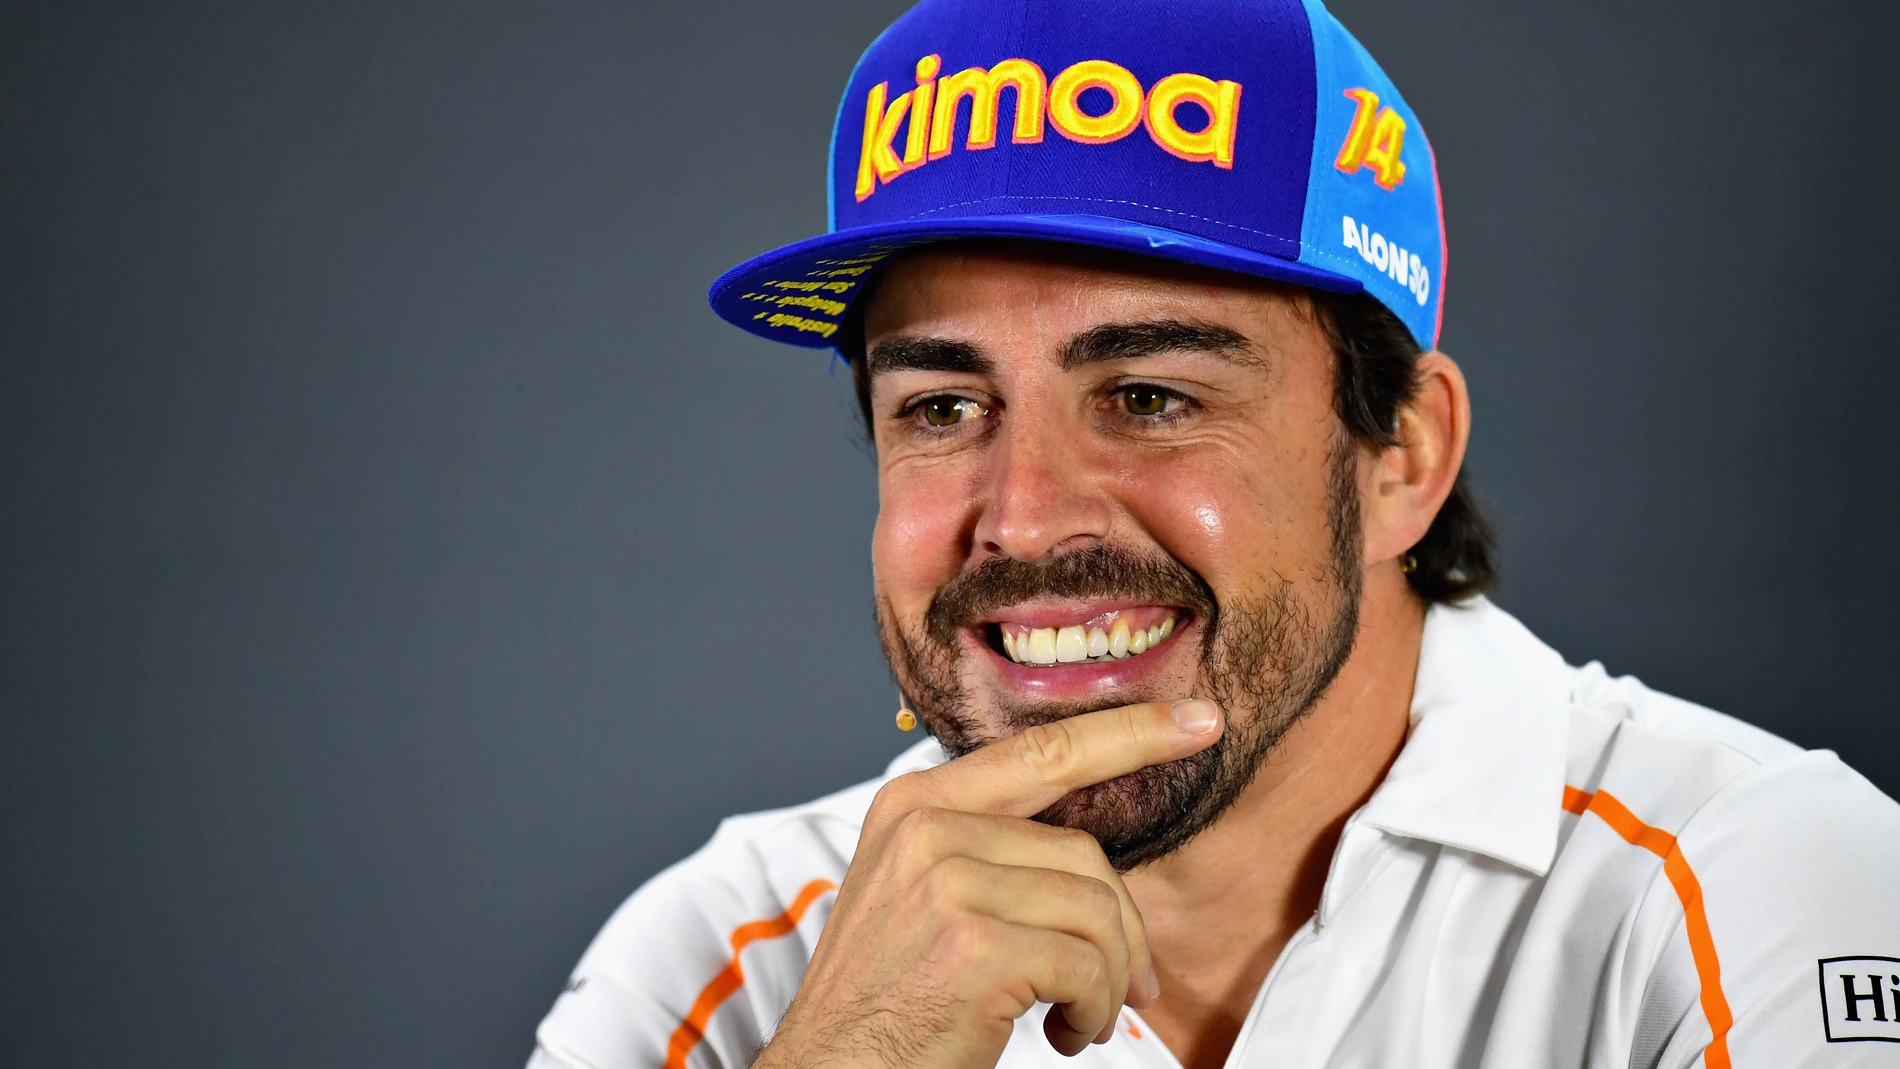 Oficial: Fernando Alonso vuelve a la Fórmula 1 con Renault en 2021